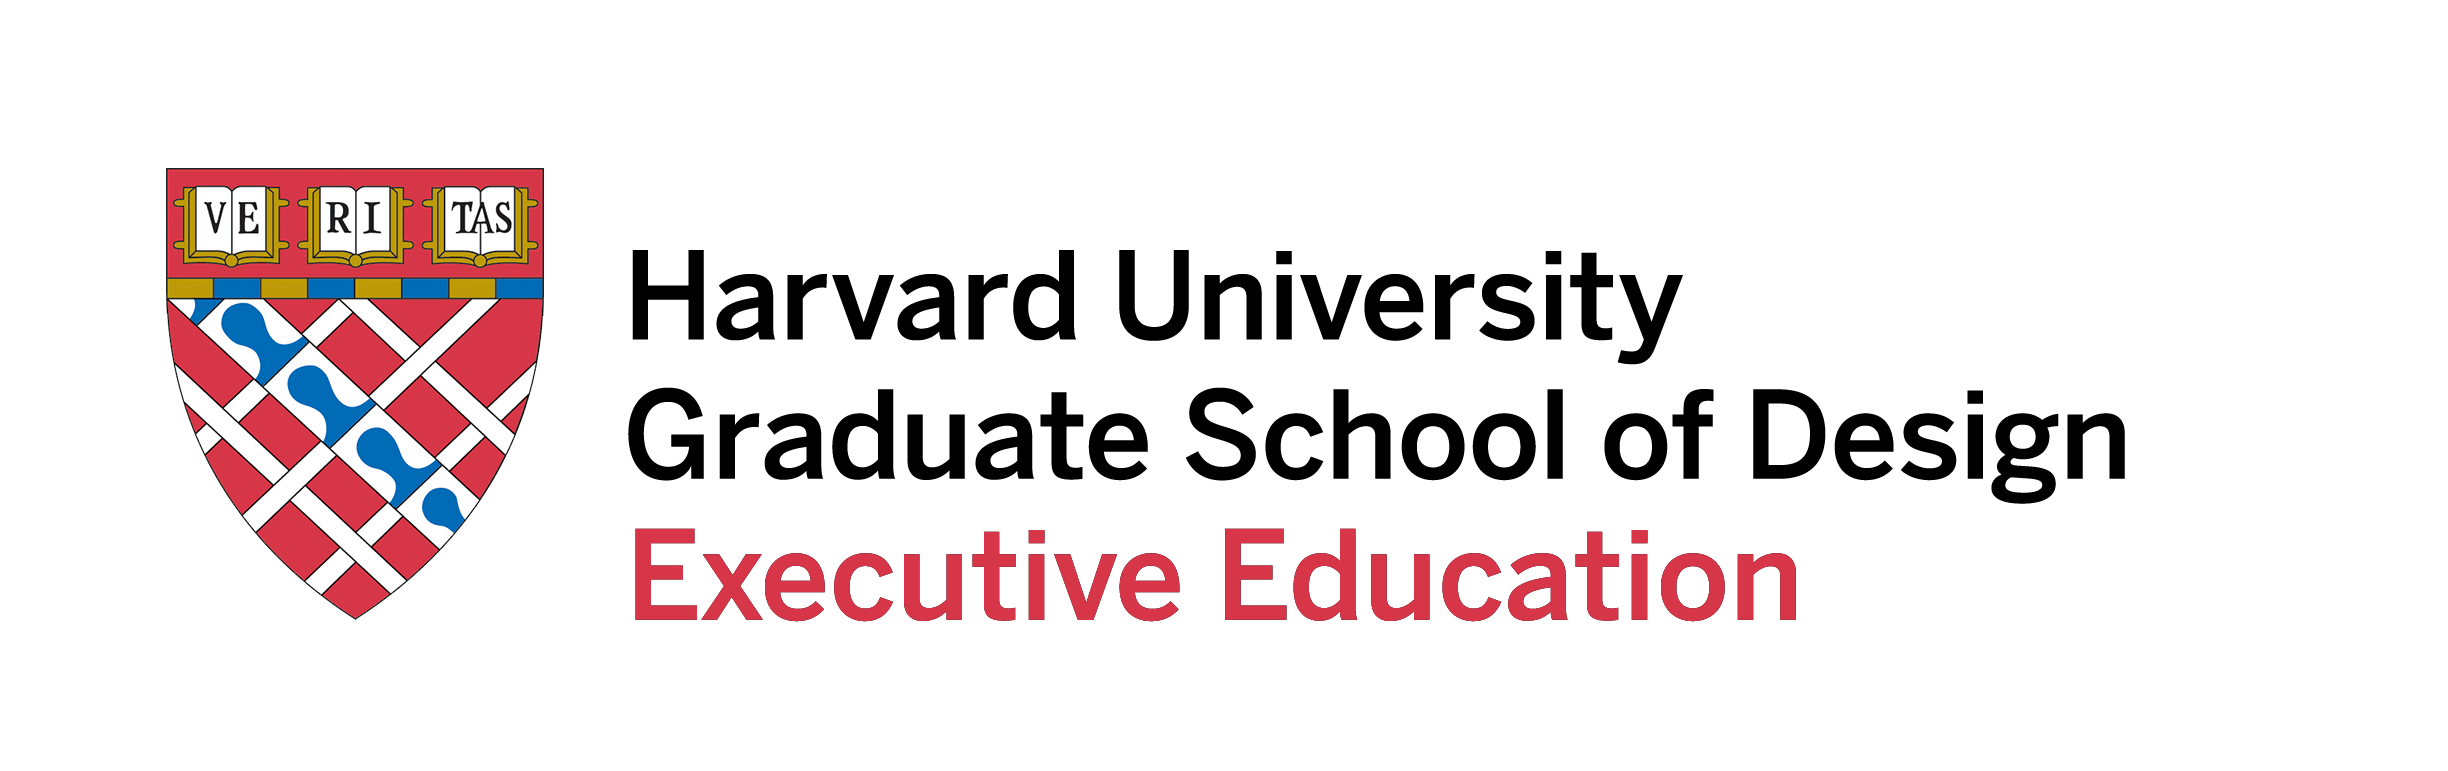 Harvard Graduate School of Design Executive Education